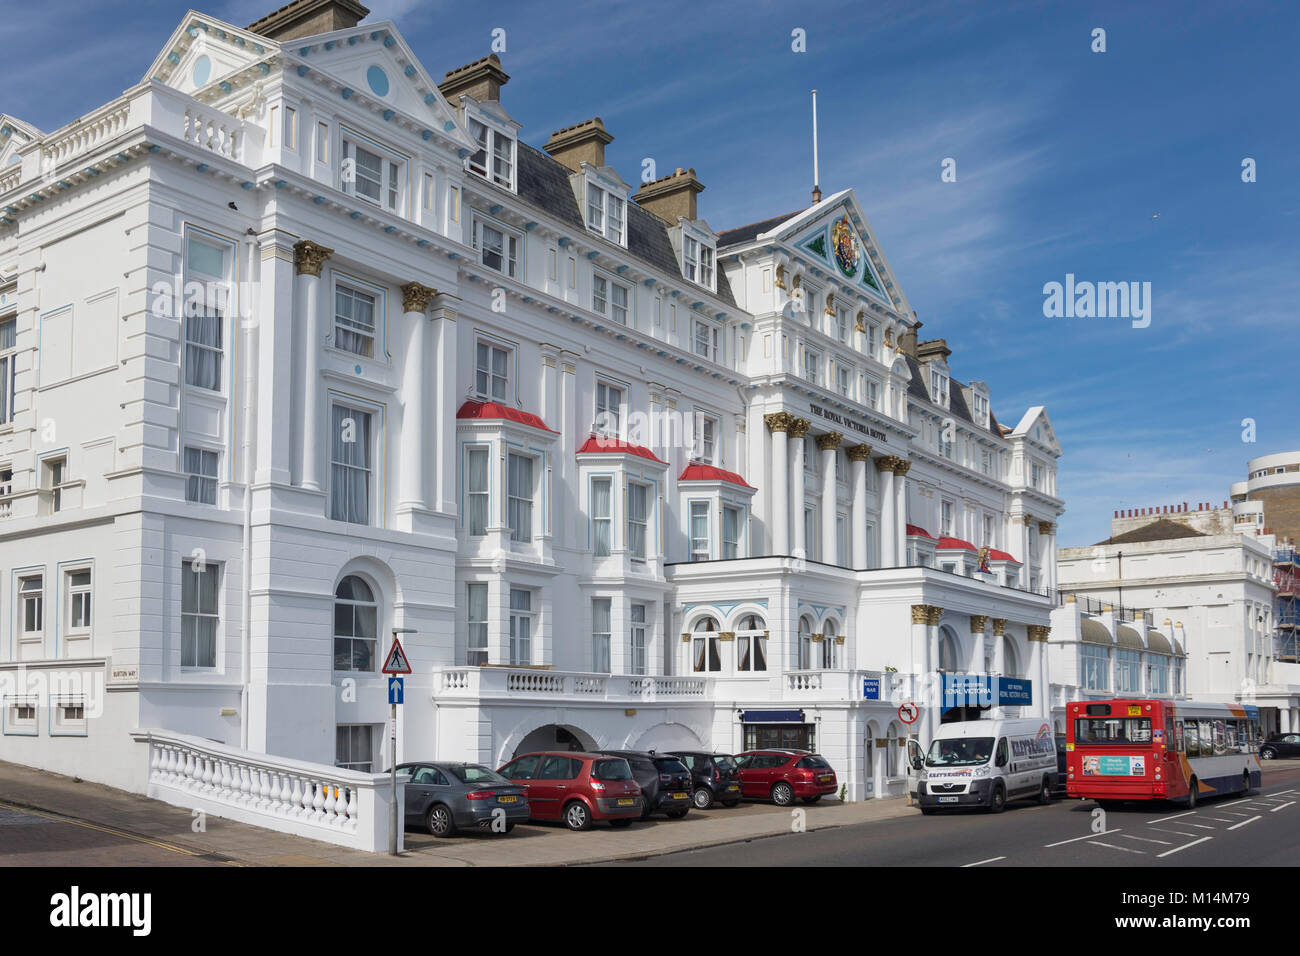 Royal Victoria Hotel Marina, St Leonards-on-Sea, Hastings, East Sussex, England, Vereinigtes Königreich Stockfoto